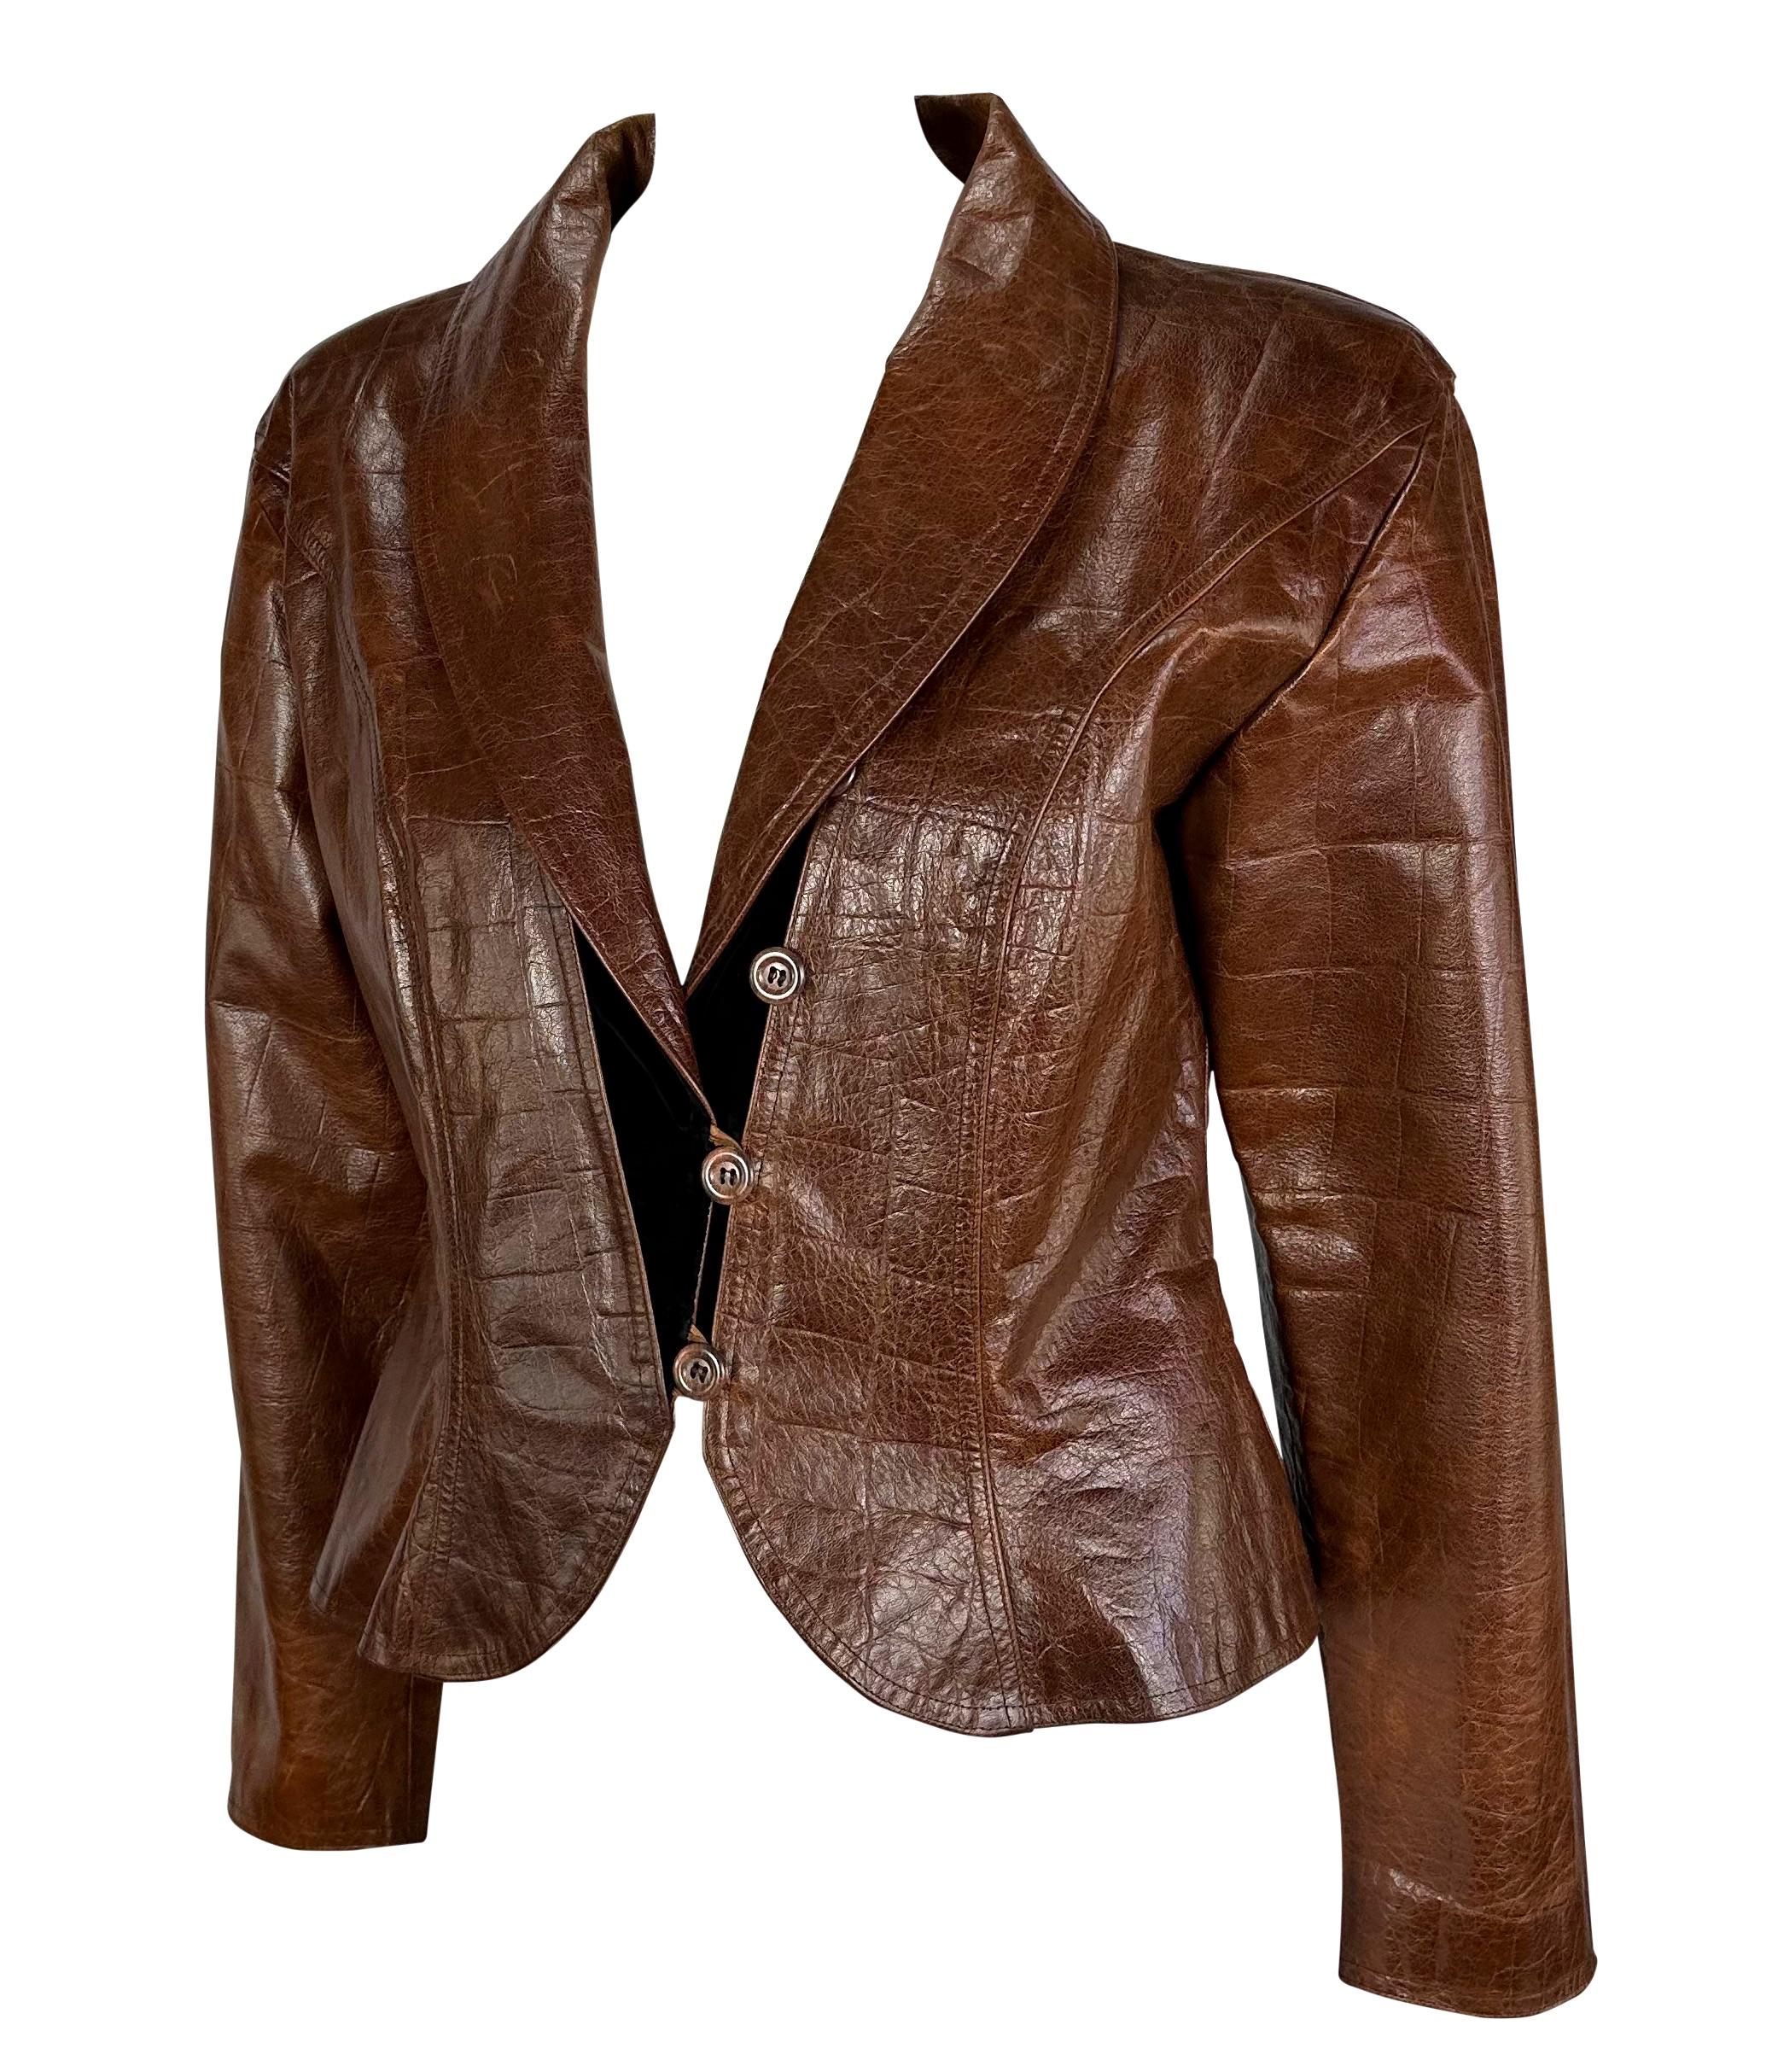 Voici une fabuleuse veste en cuir marron embossé au crocodile d'Emanuel Ungaro. Datant des années 1980, cette fabuleuse veste présente un ourlet péplum évasé, des détails en velours noir et un revers en forme de châle. Ajoutez cette fabuleuse pièce